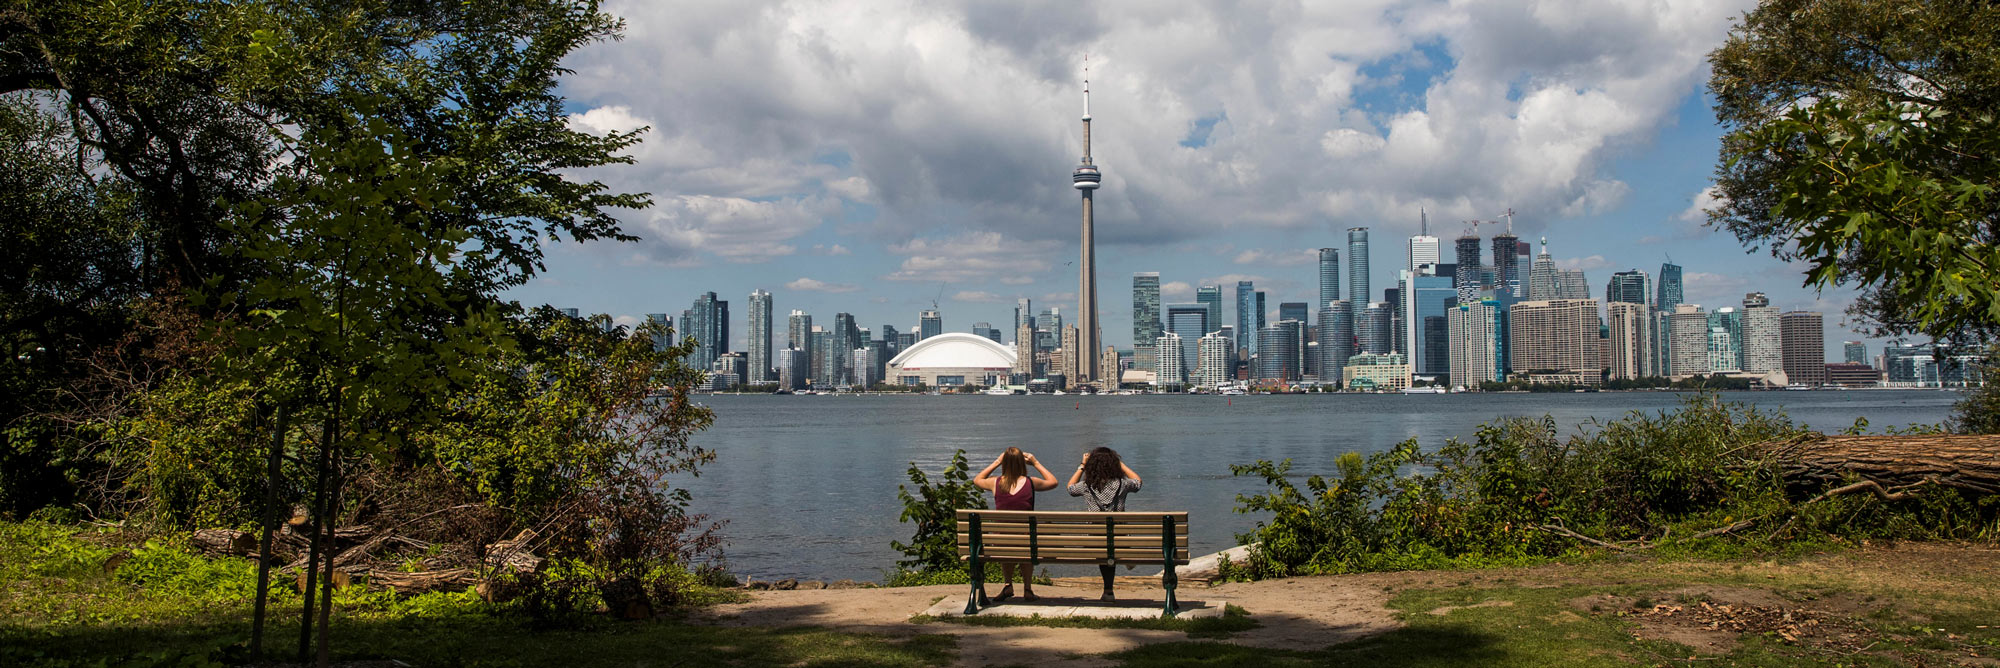 View of Toronto skyline from urban park on Toronto Island.